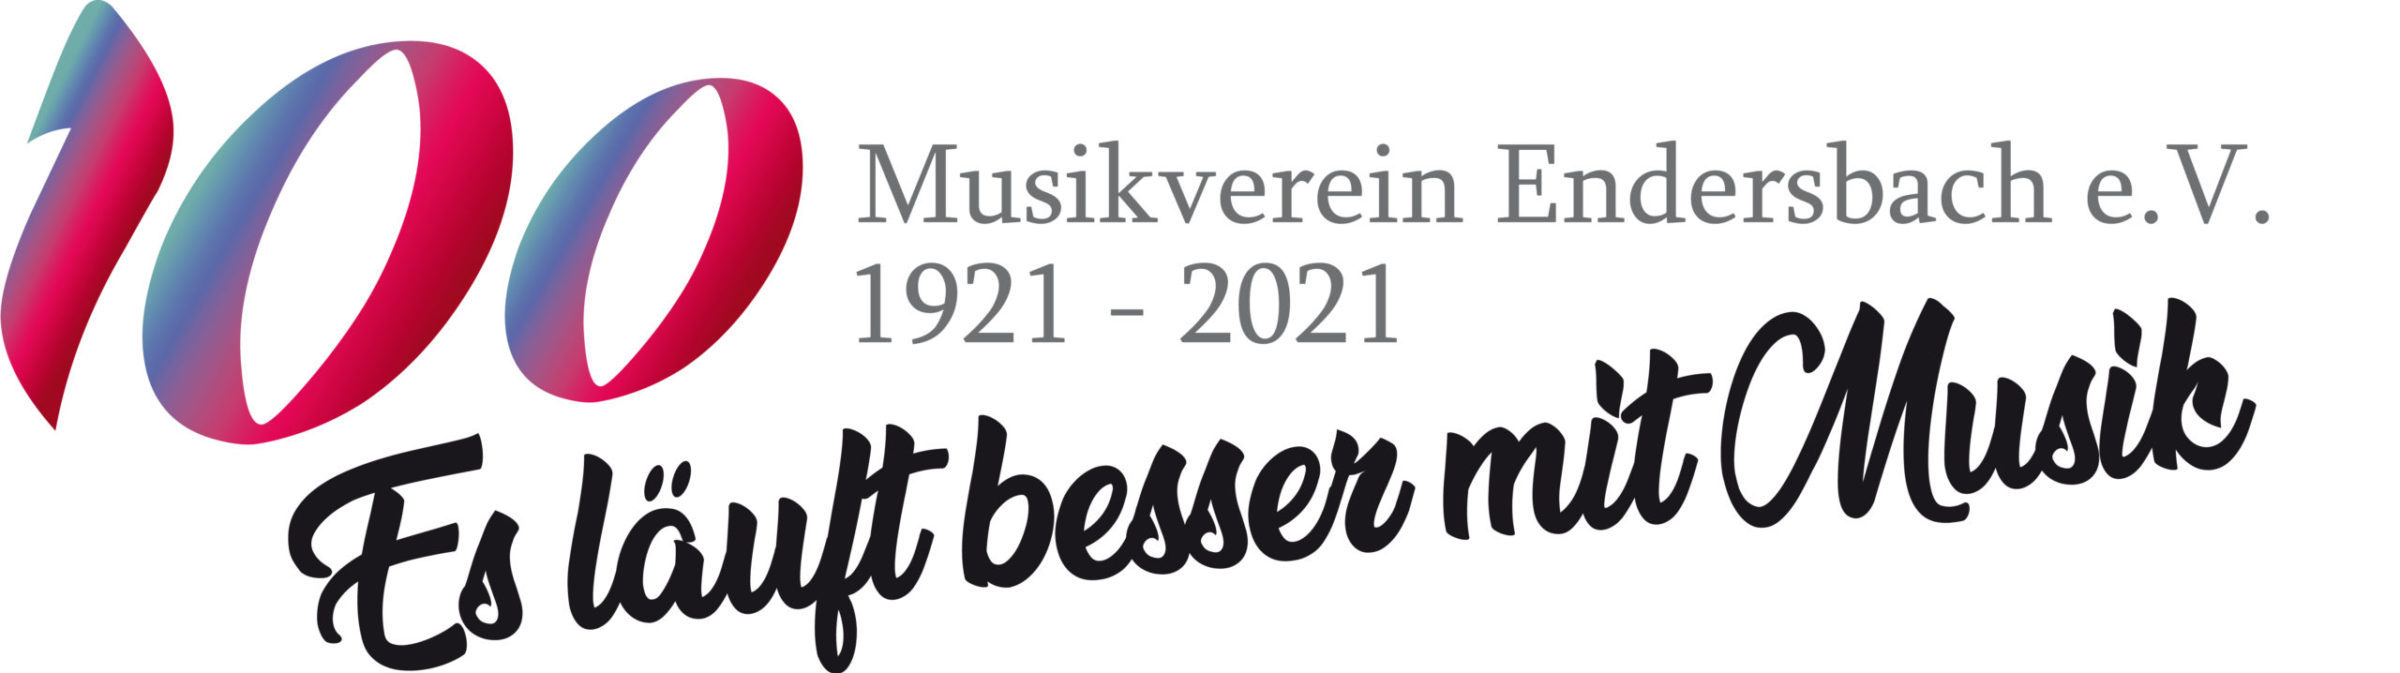 Musikverein Endersbach e.V.